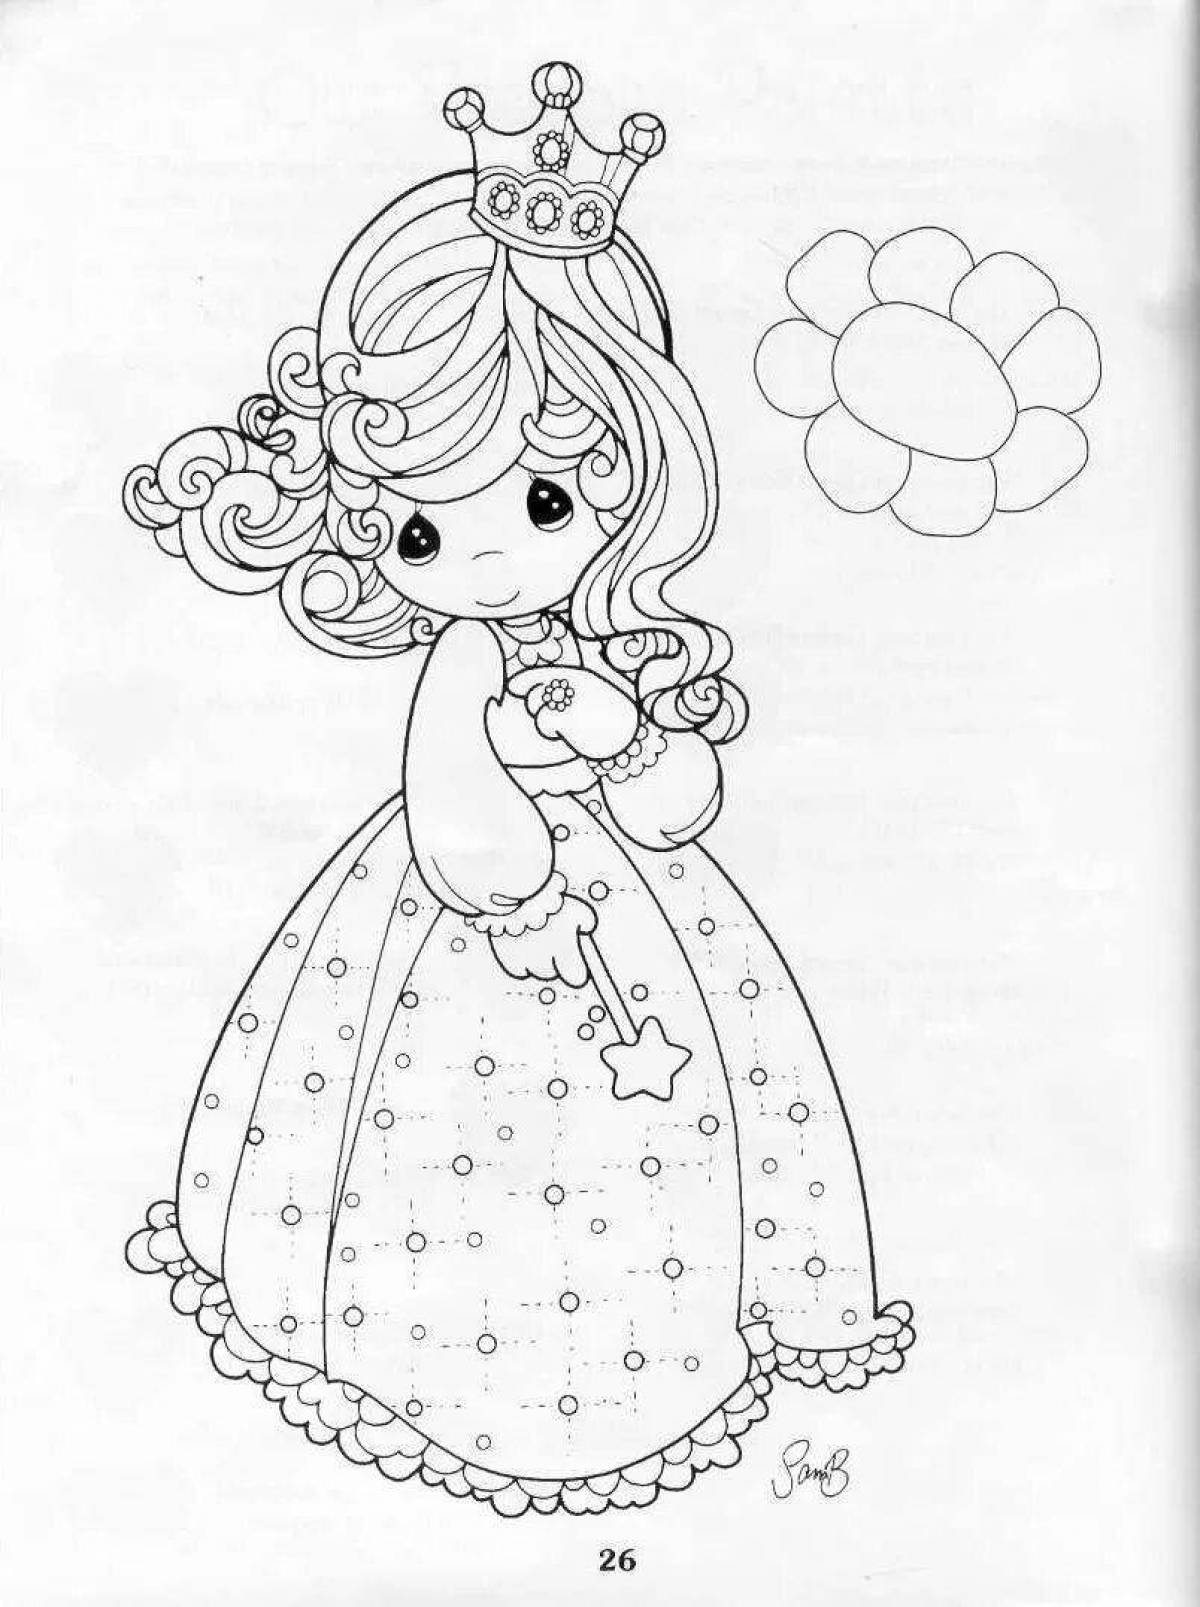 Cute princess coloring book for kids